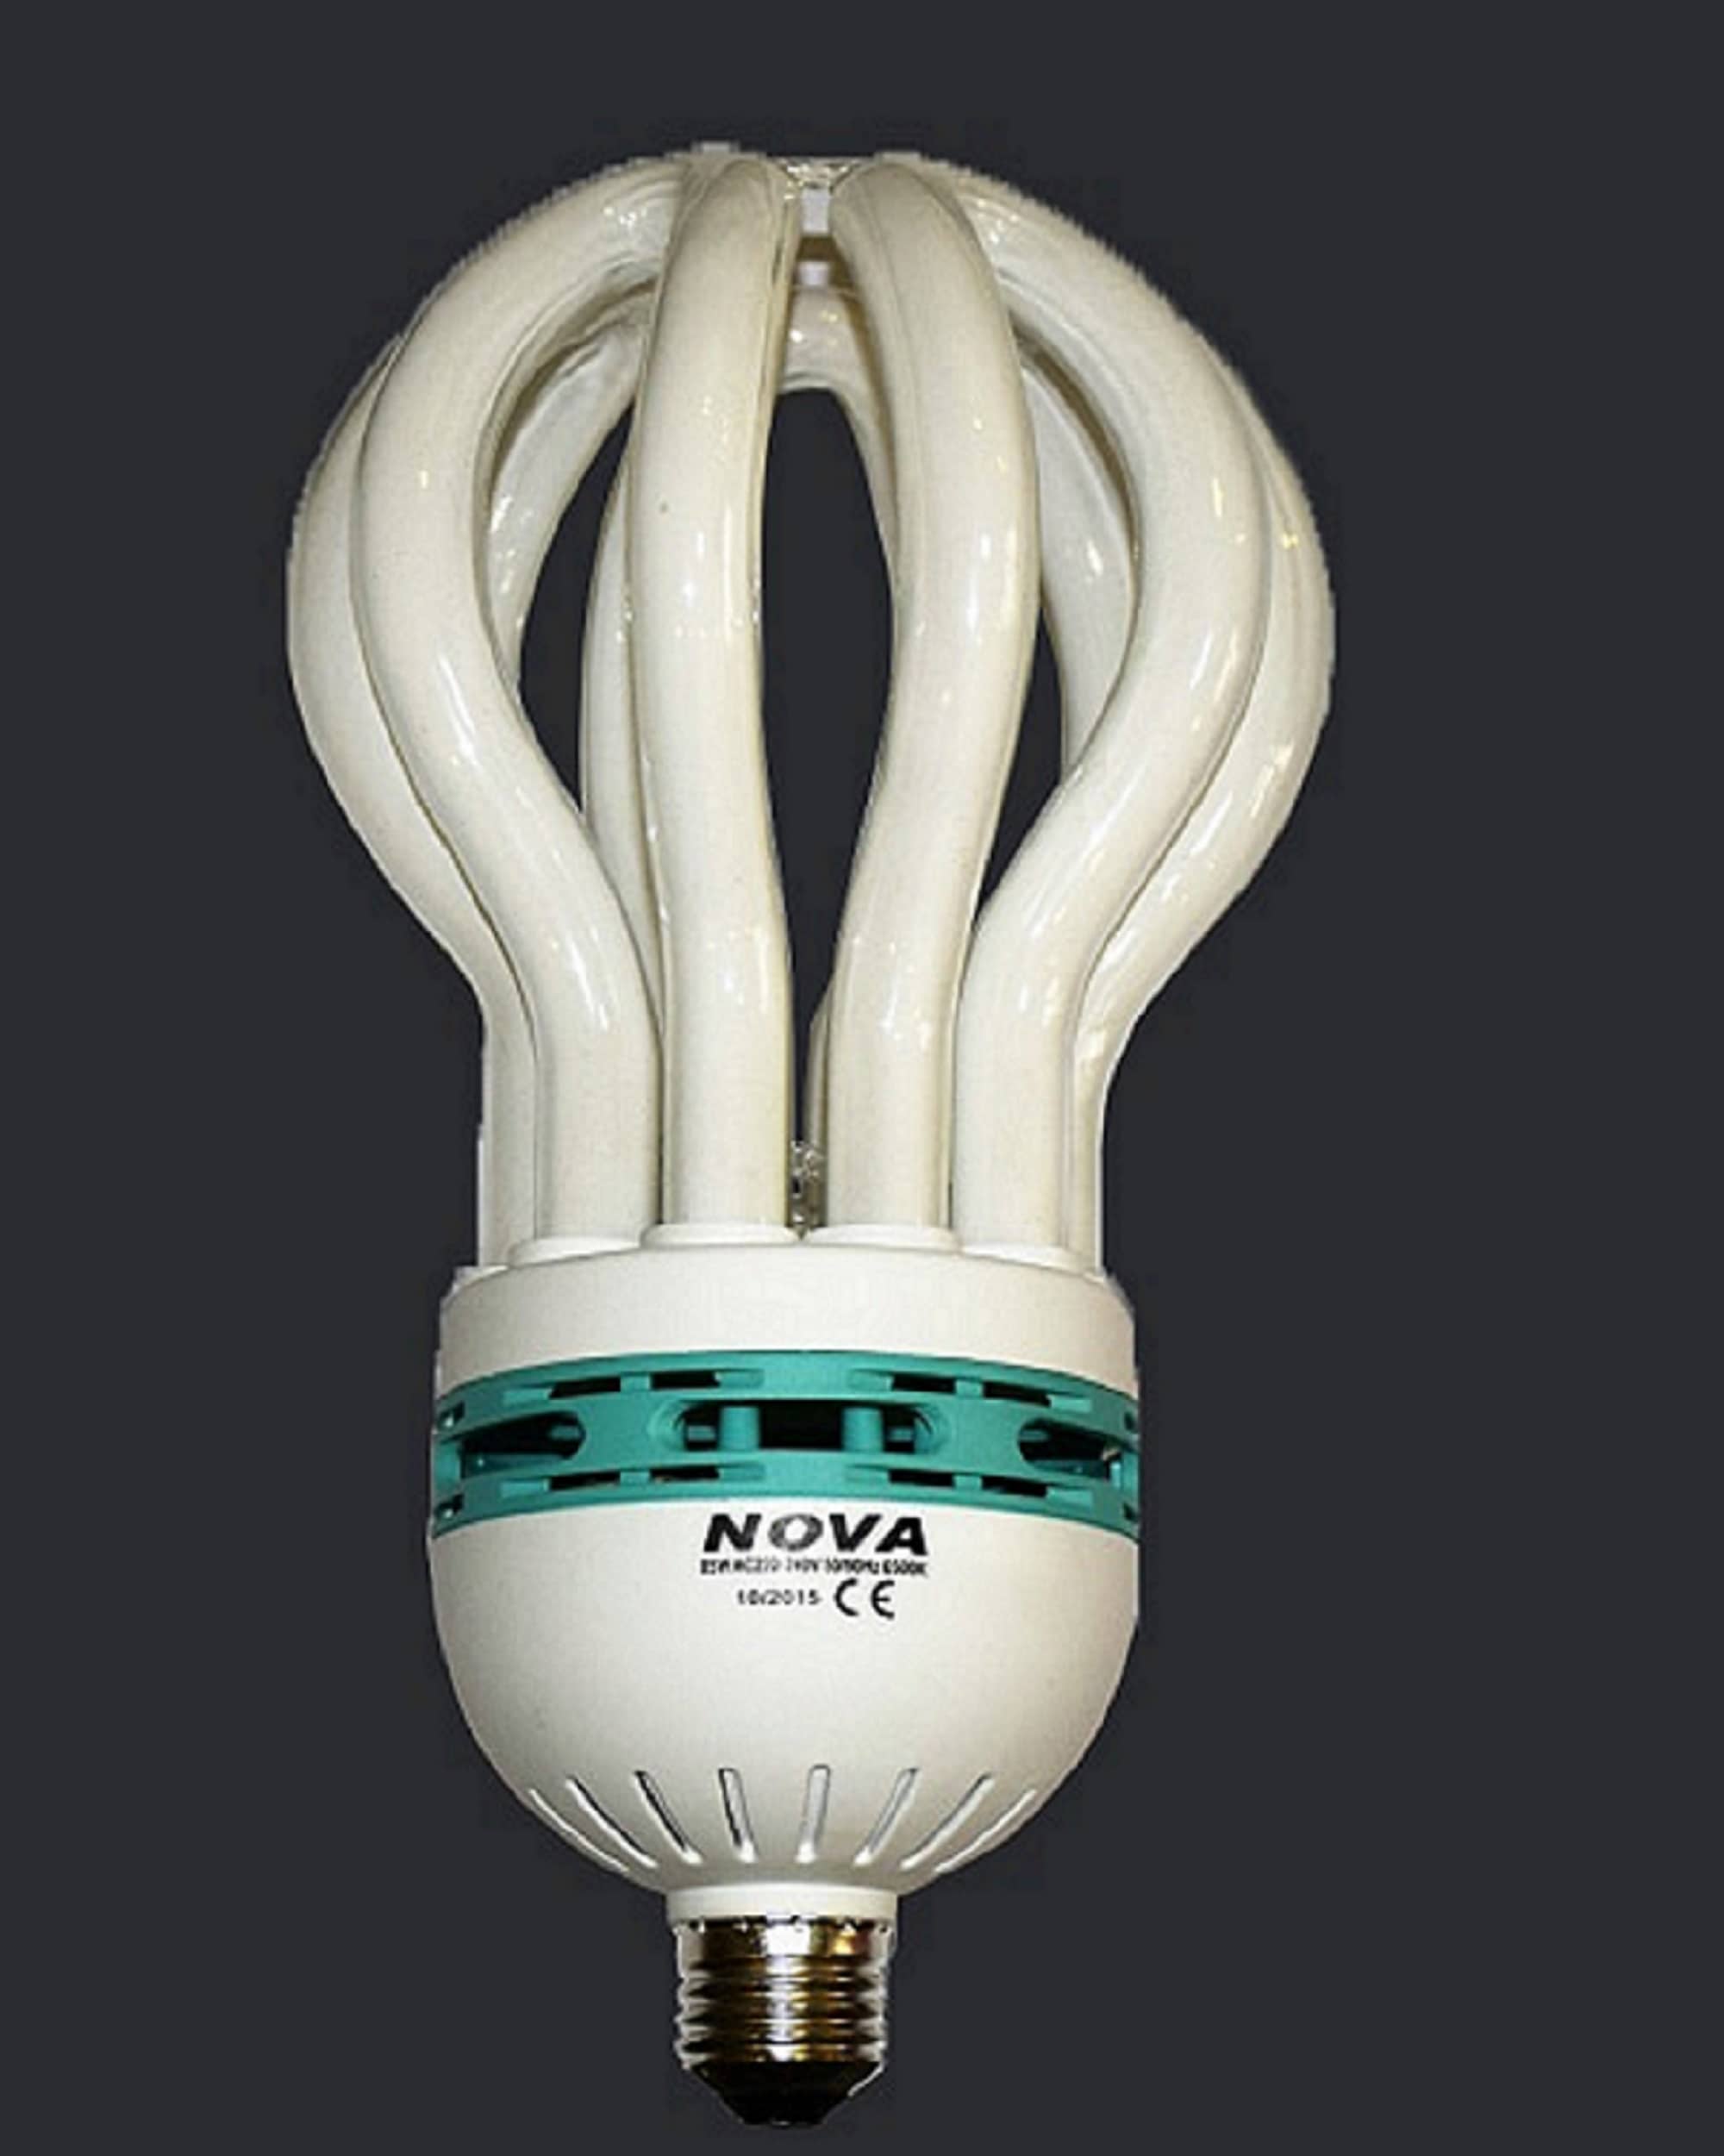 Nova Energy Saver 85w